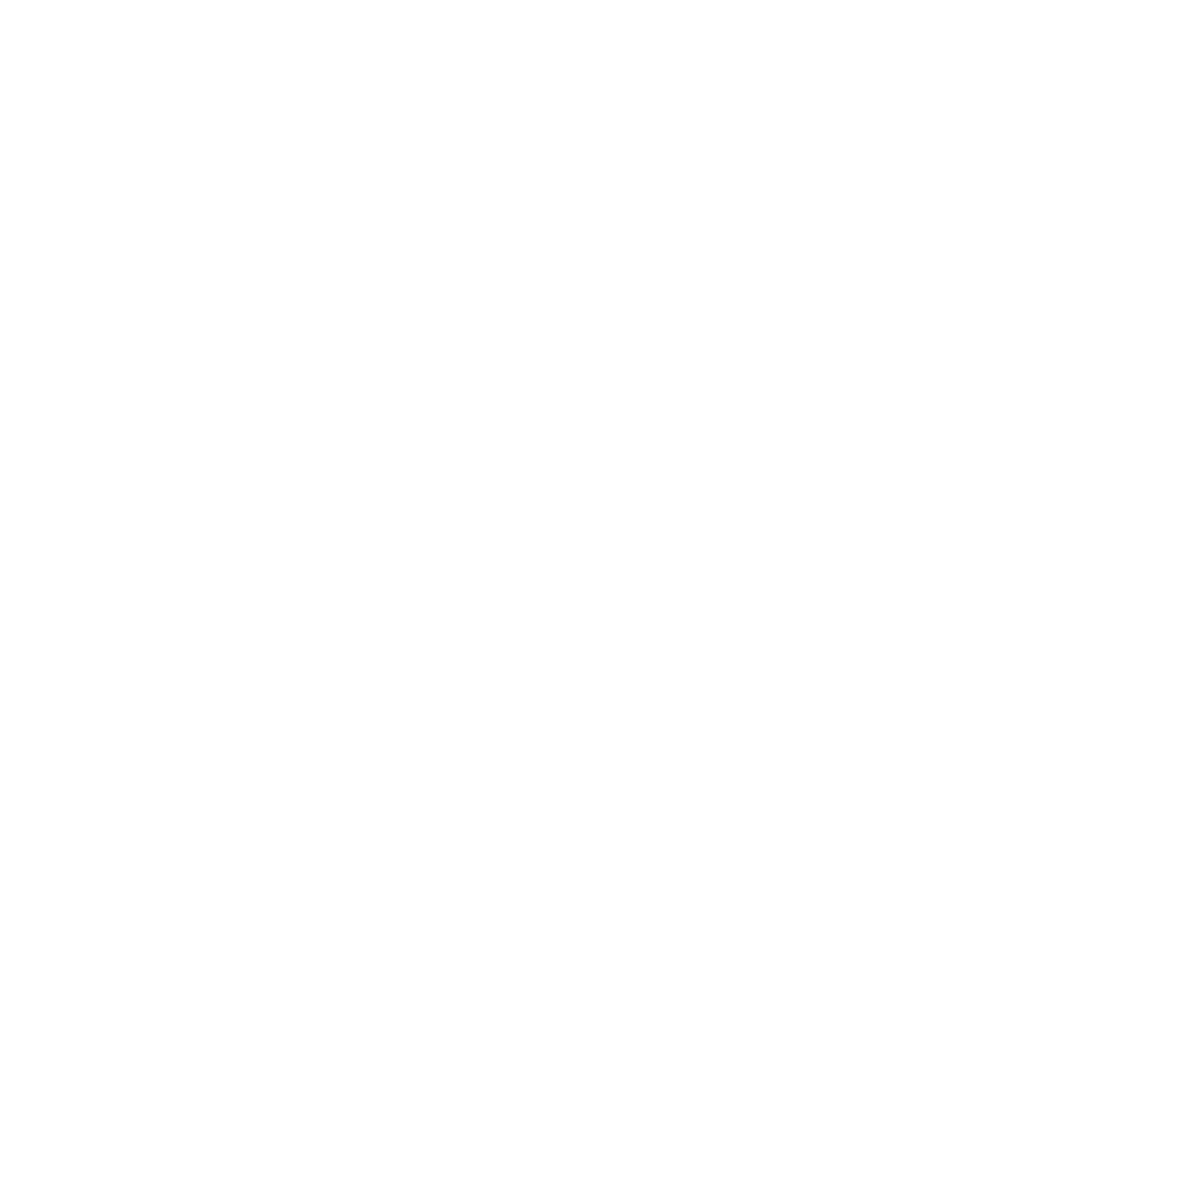 Neuf Media